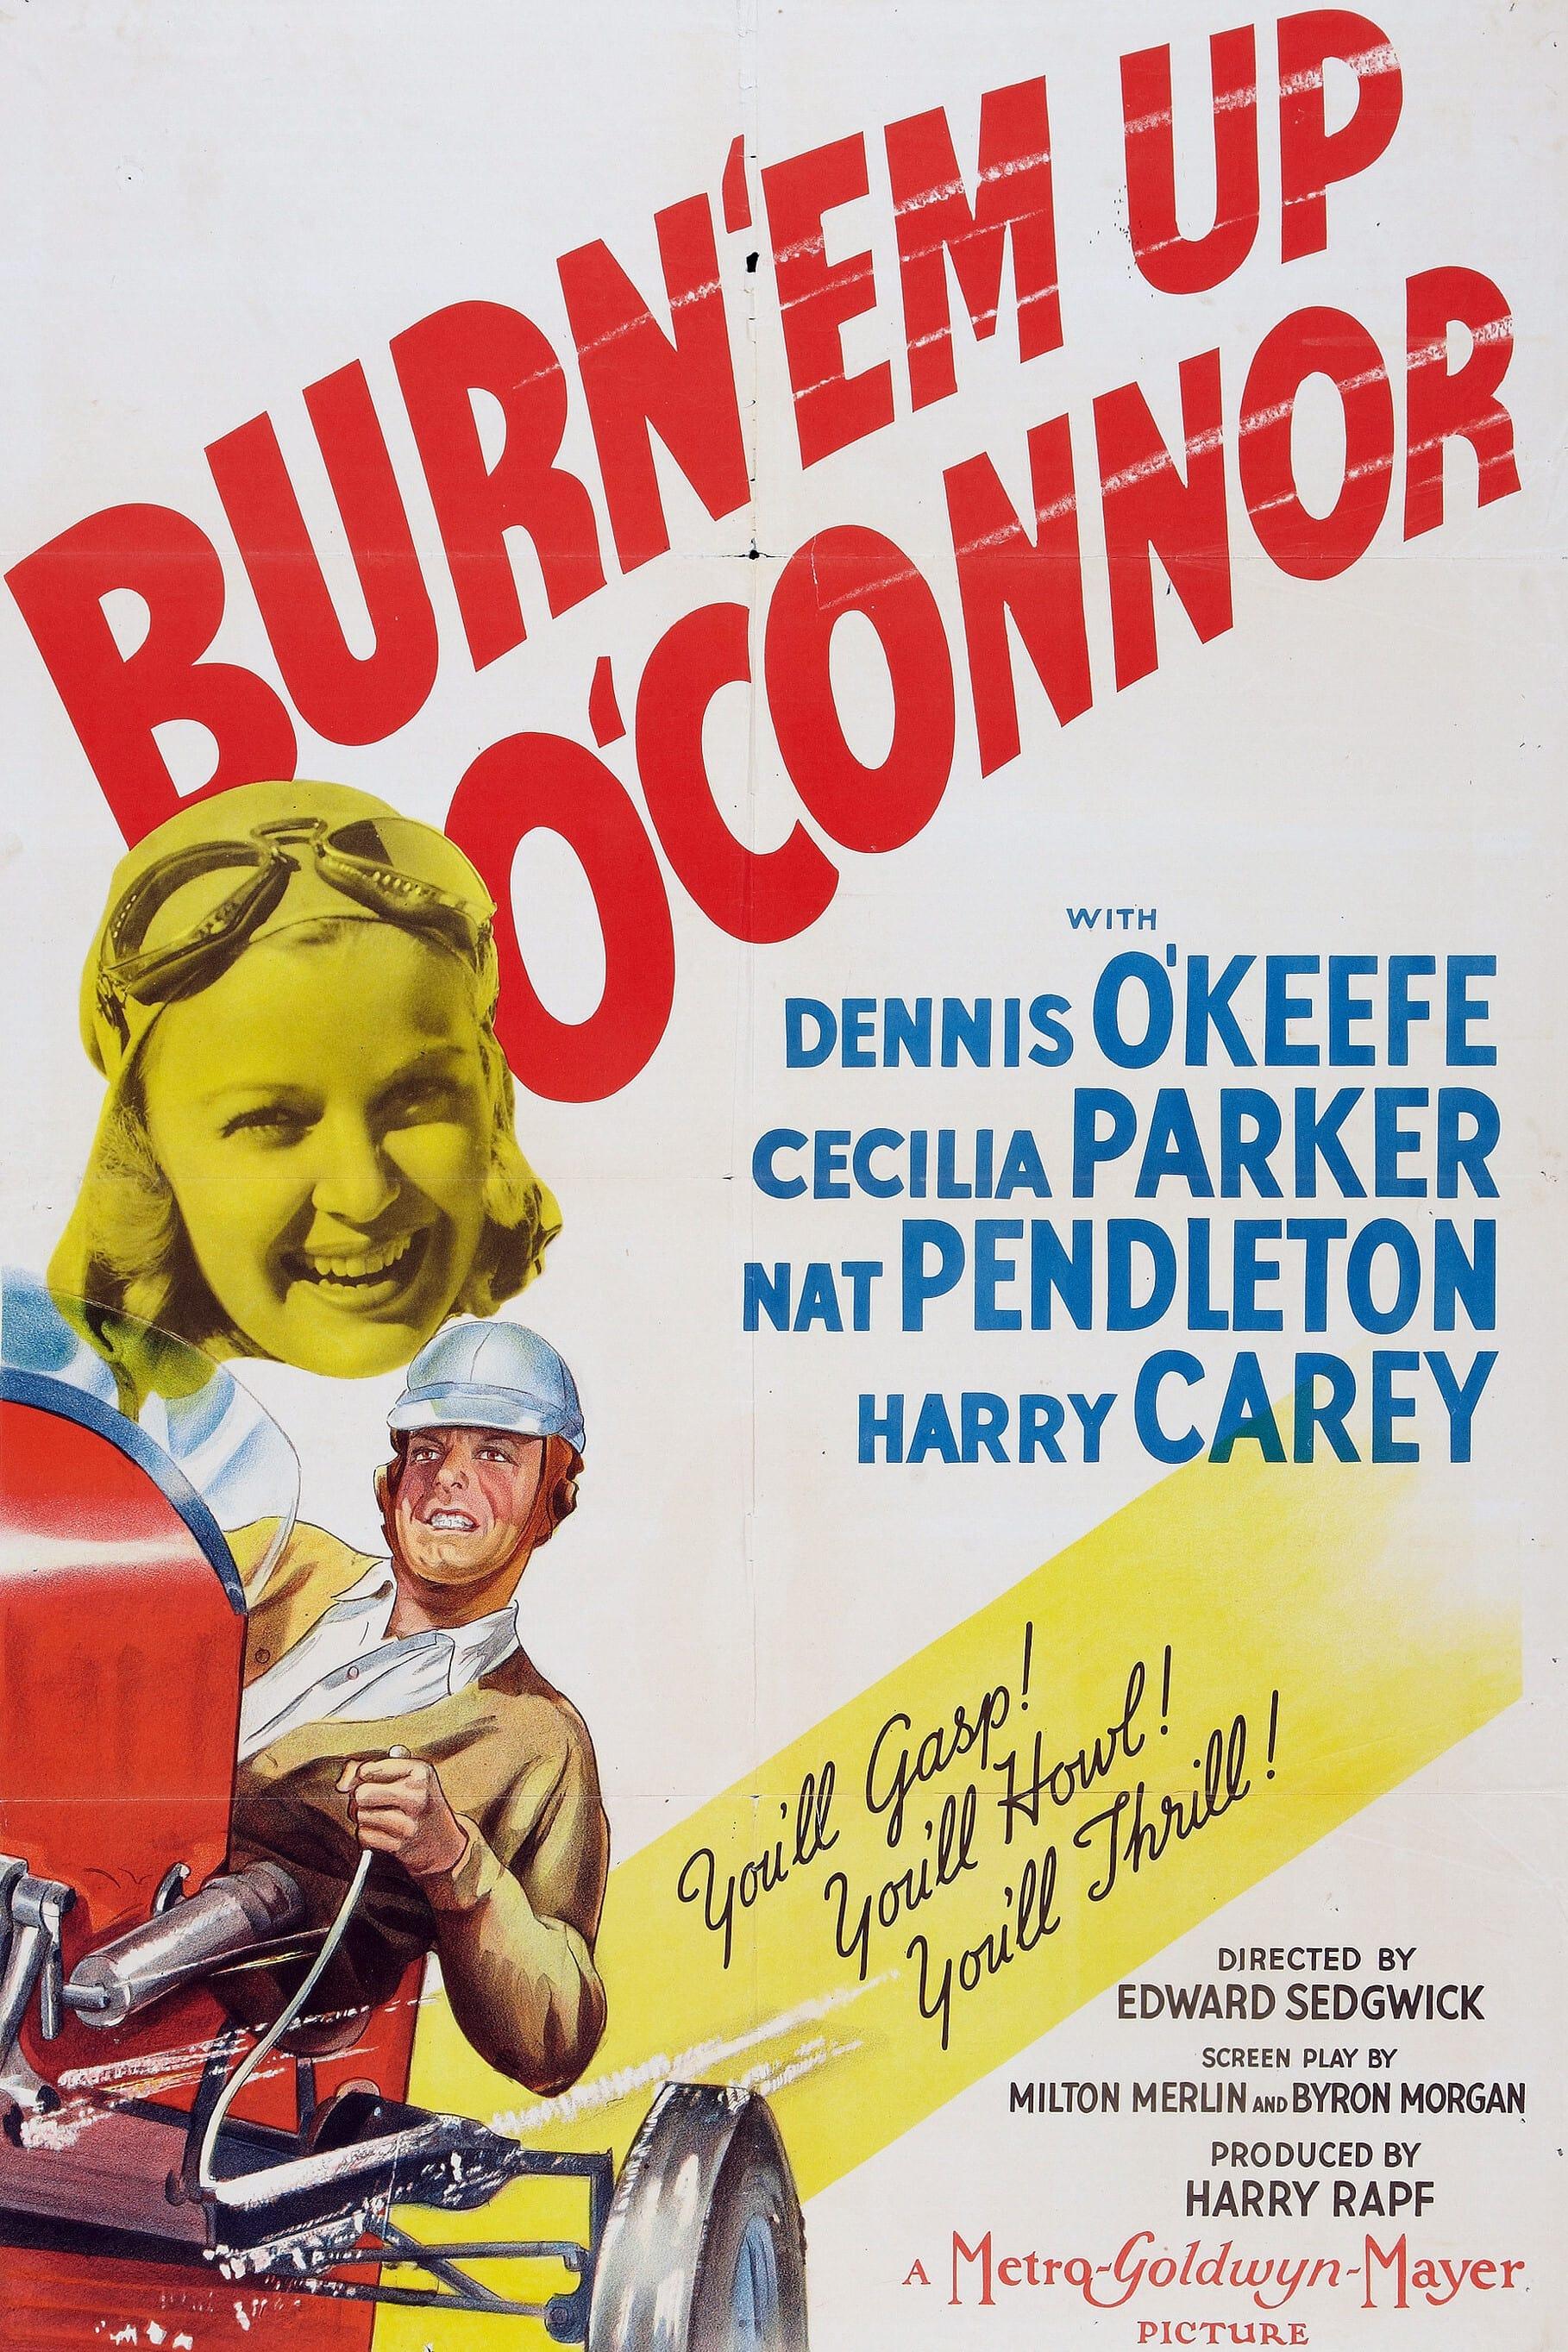 Burn 'Em Up O'Connor poster